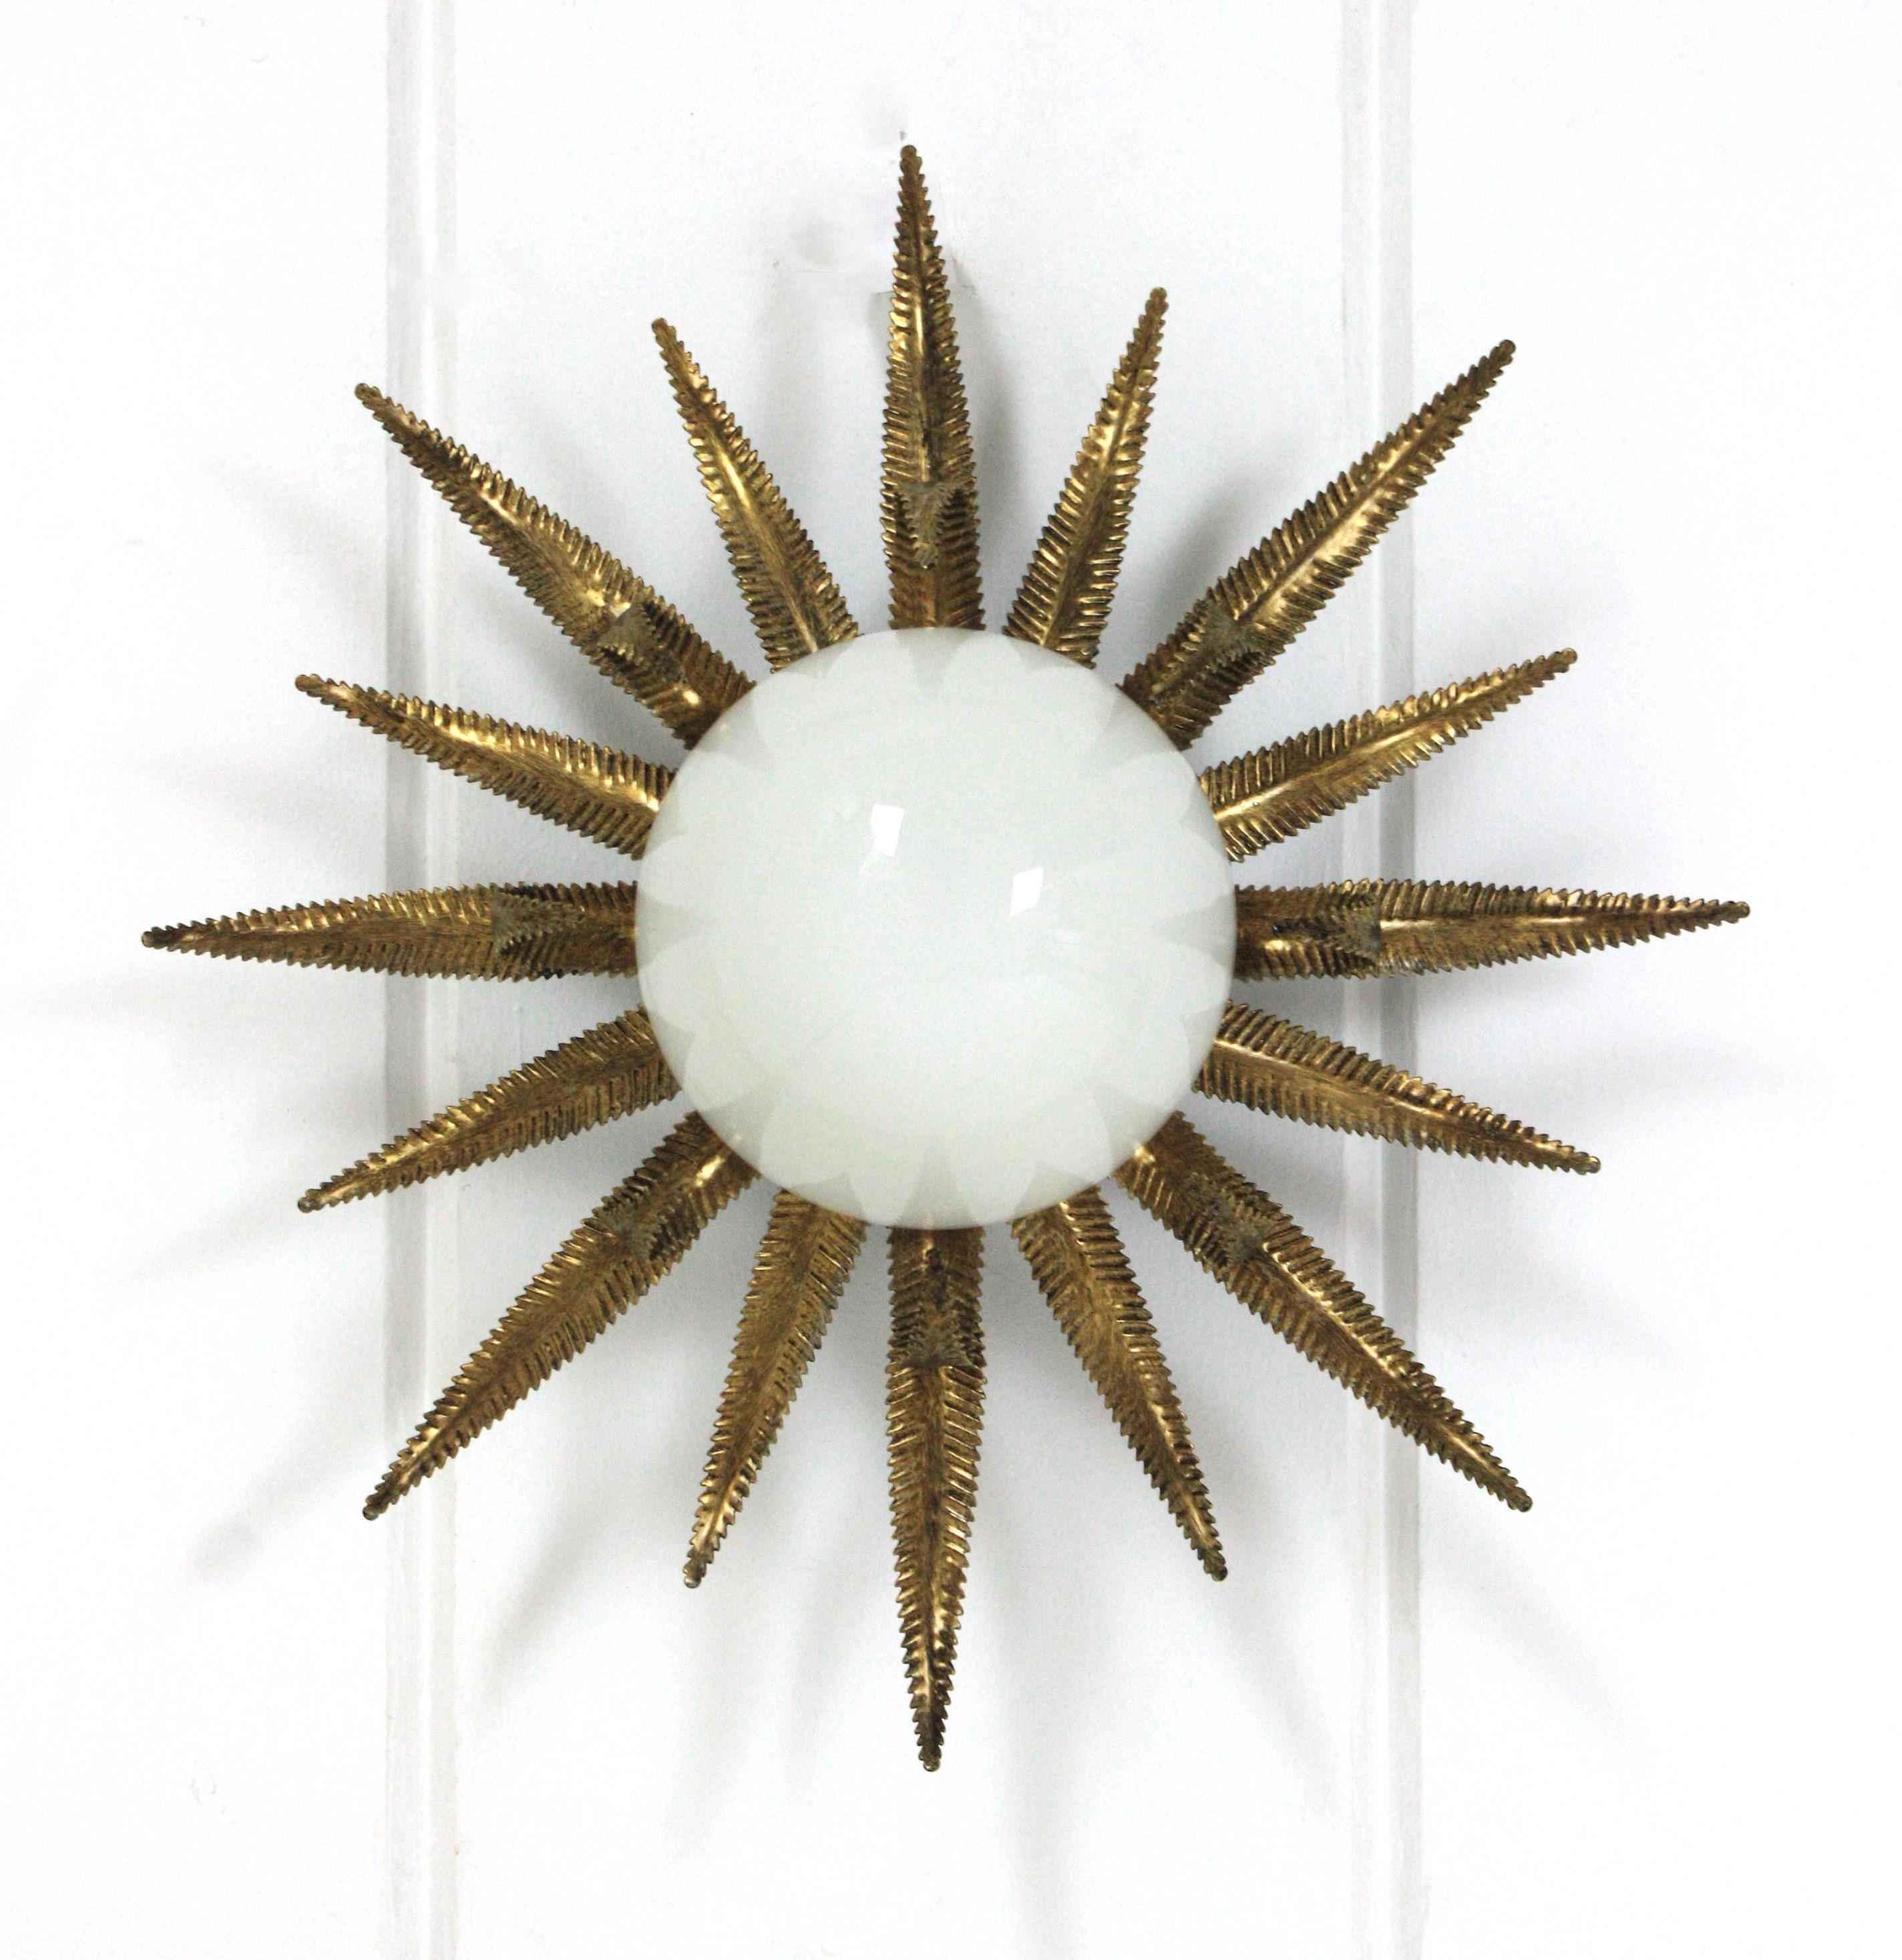 Remarquable encastrement français en métal doré et verre de lait, années 1950
Ce plafonnier Sunburst en forme d'étoile a une construction qui attire l'attention. La base en fer doré patiné et en forme de soleil ou d'étoile porte un abat-jour en